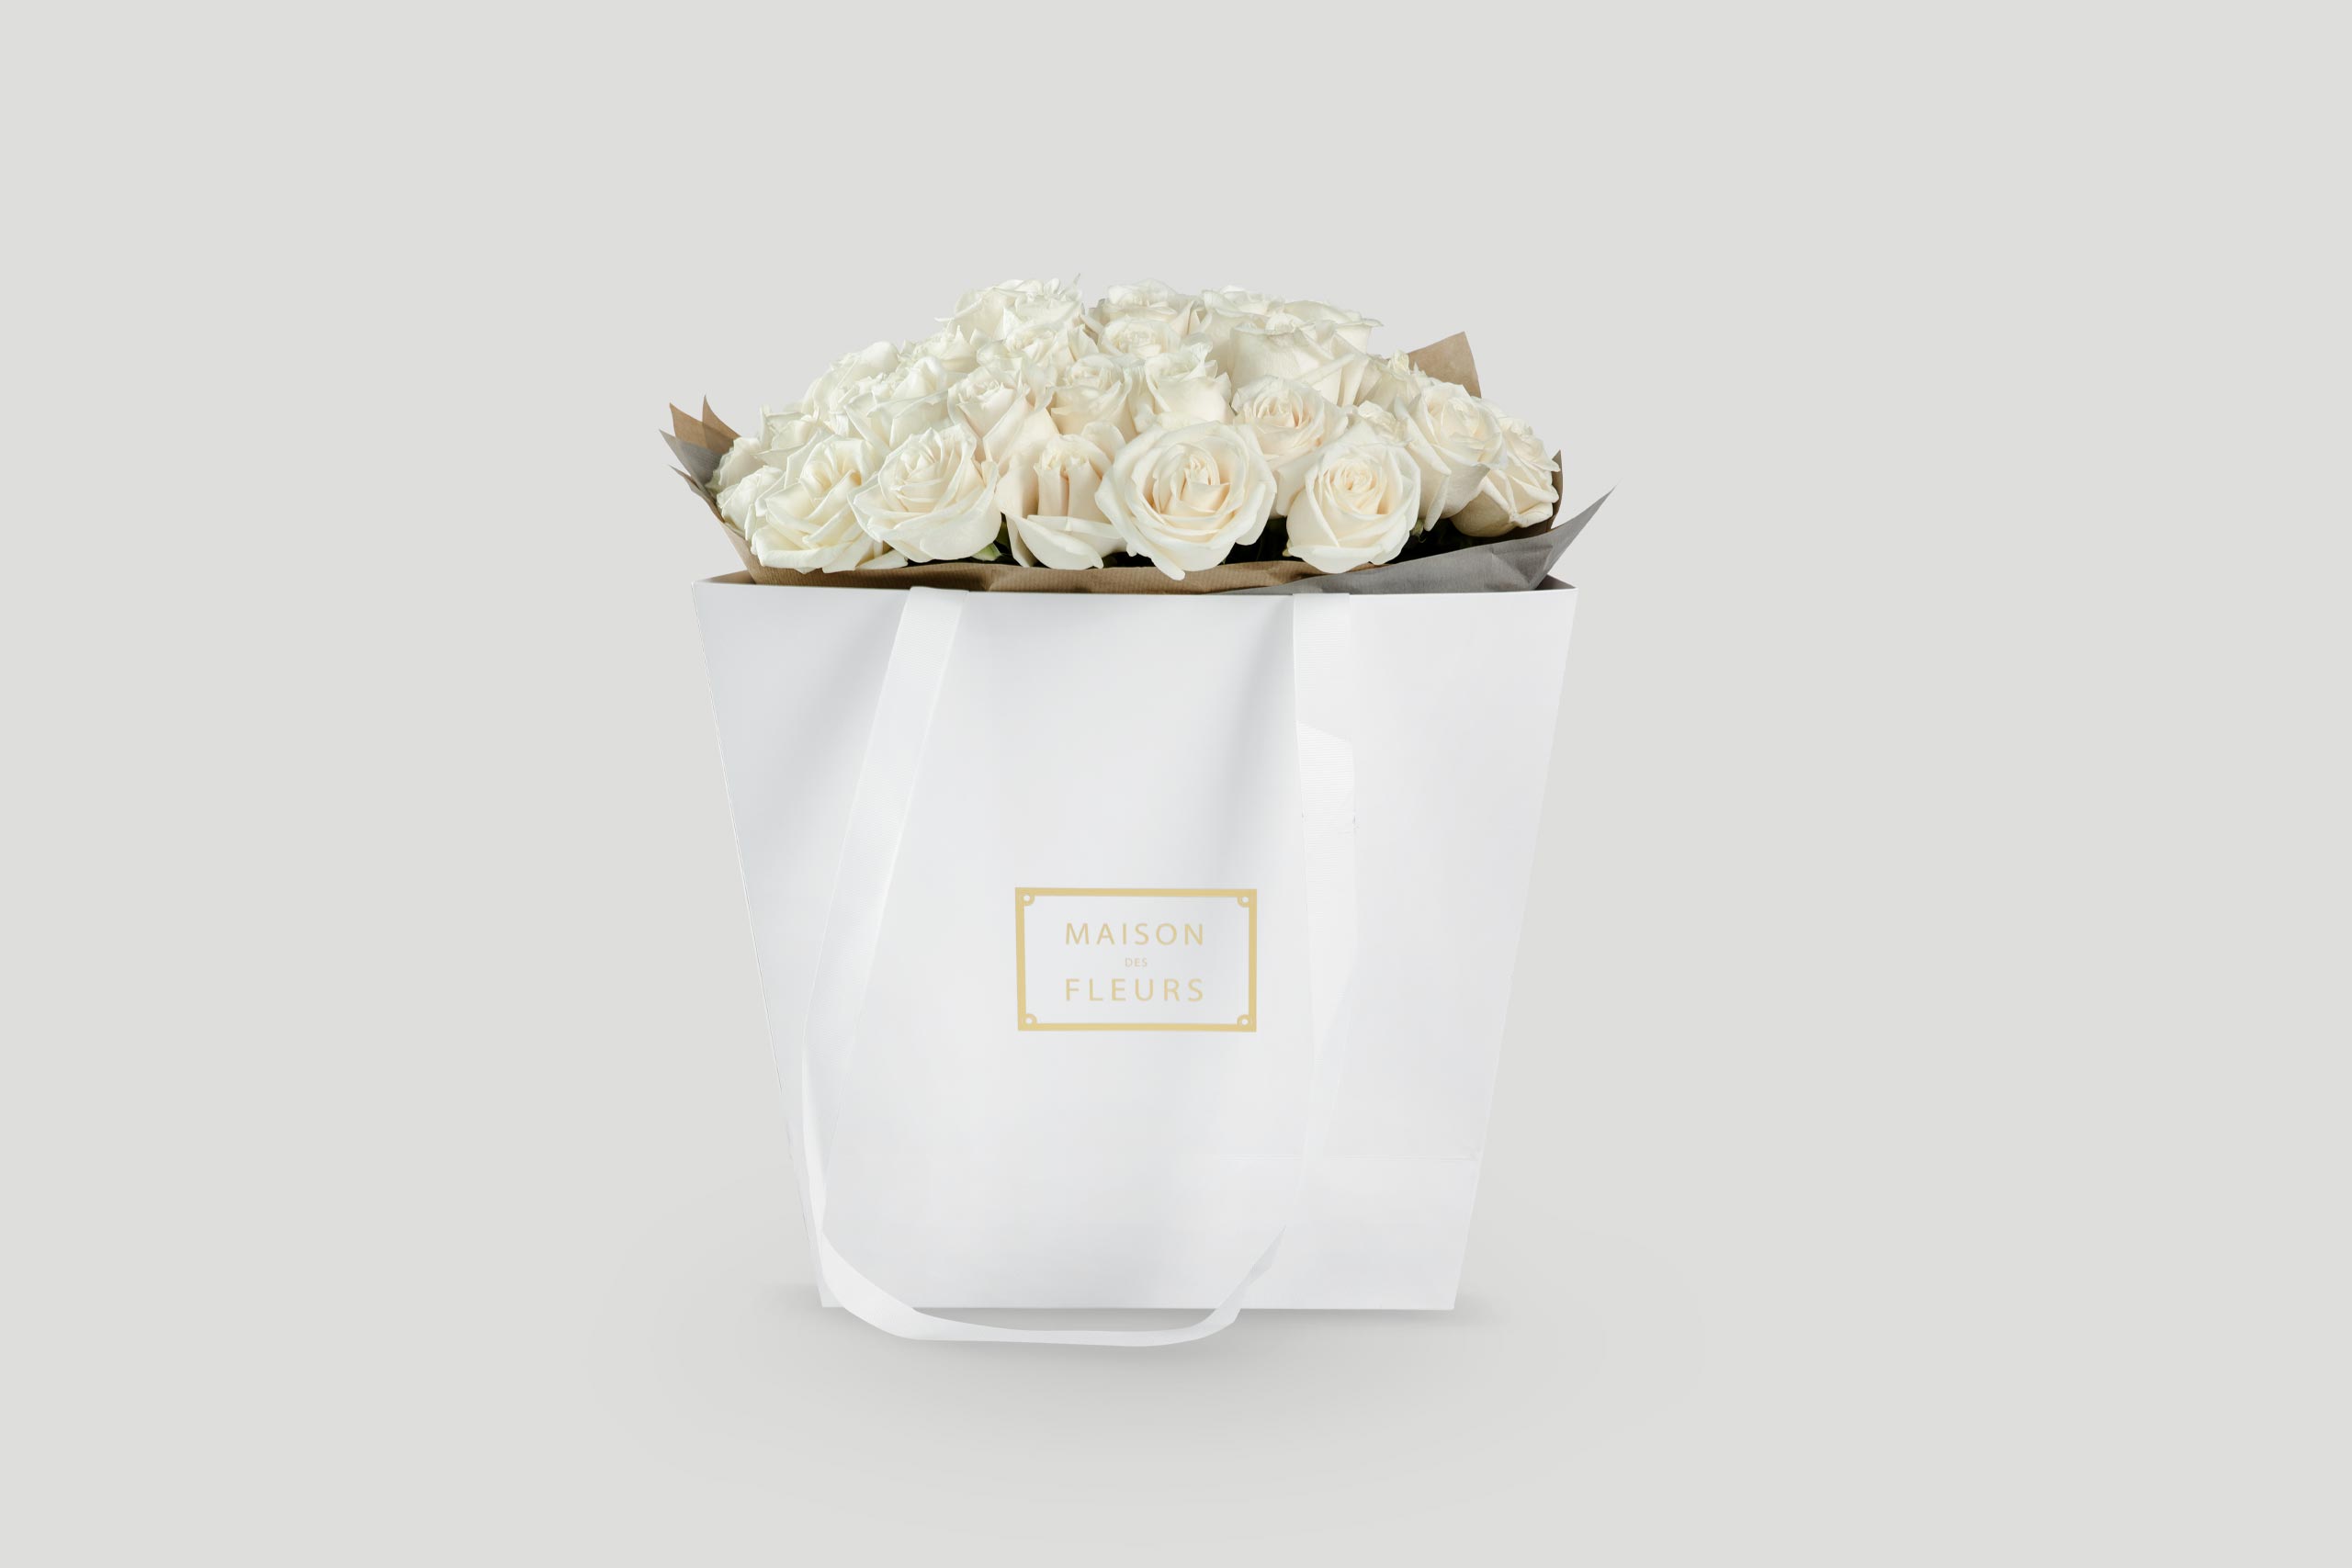 White Roses Bouquet - Maison Des Fleurs